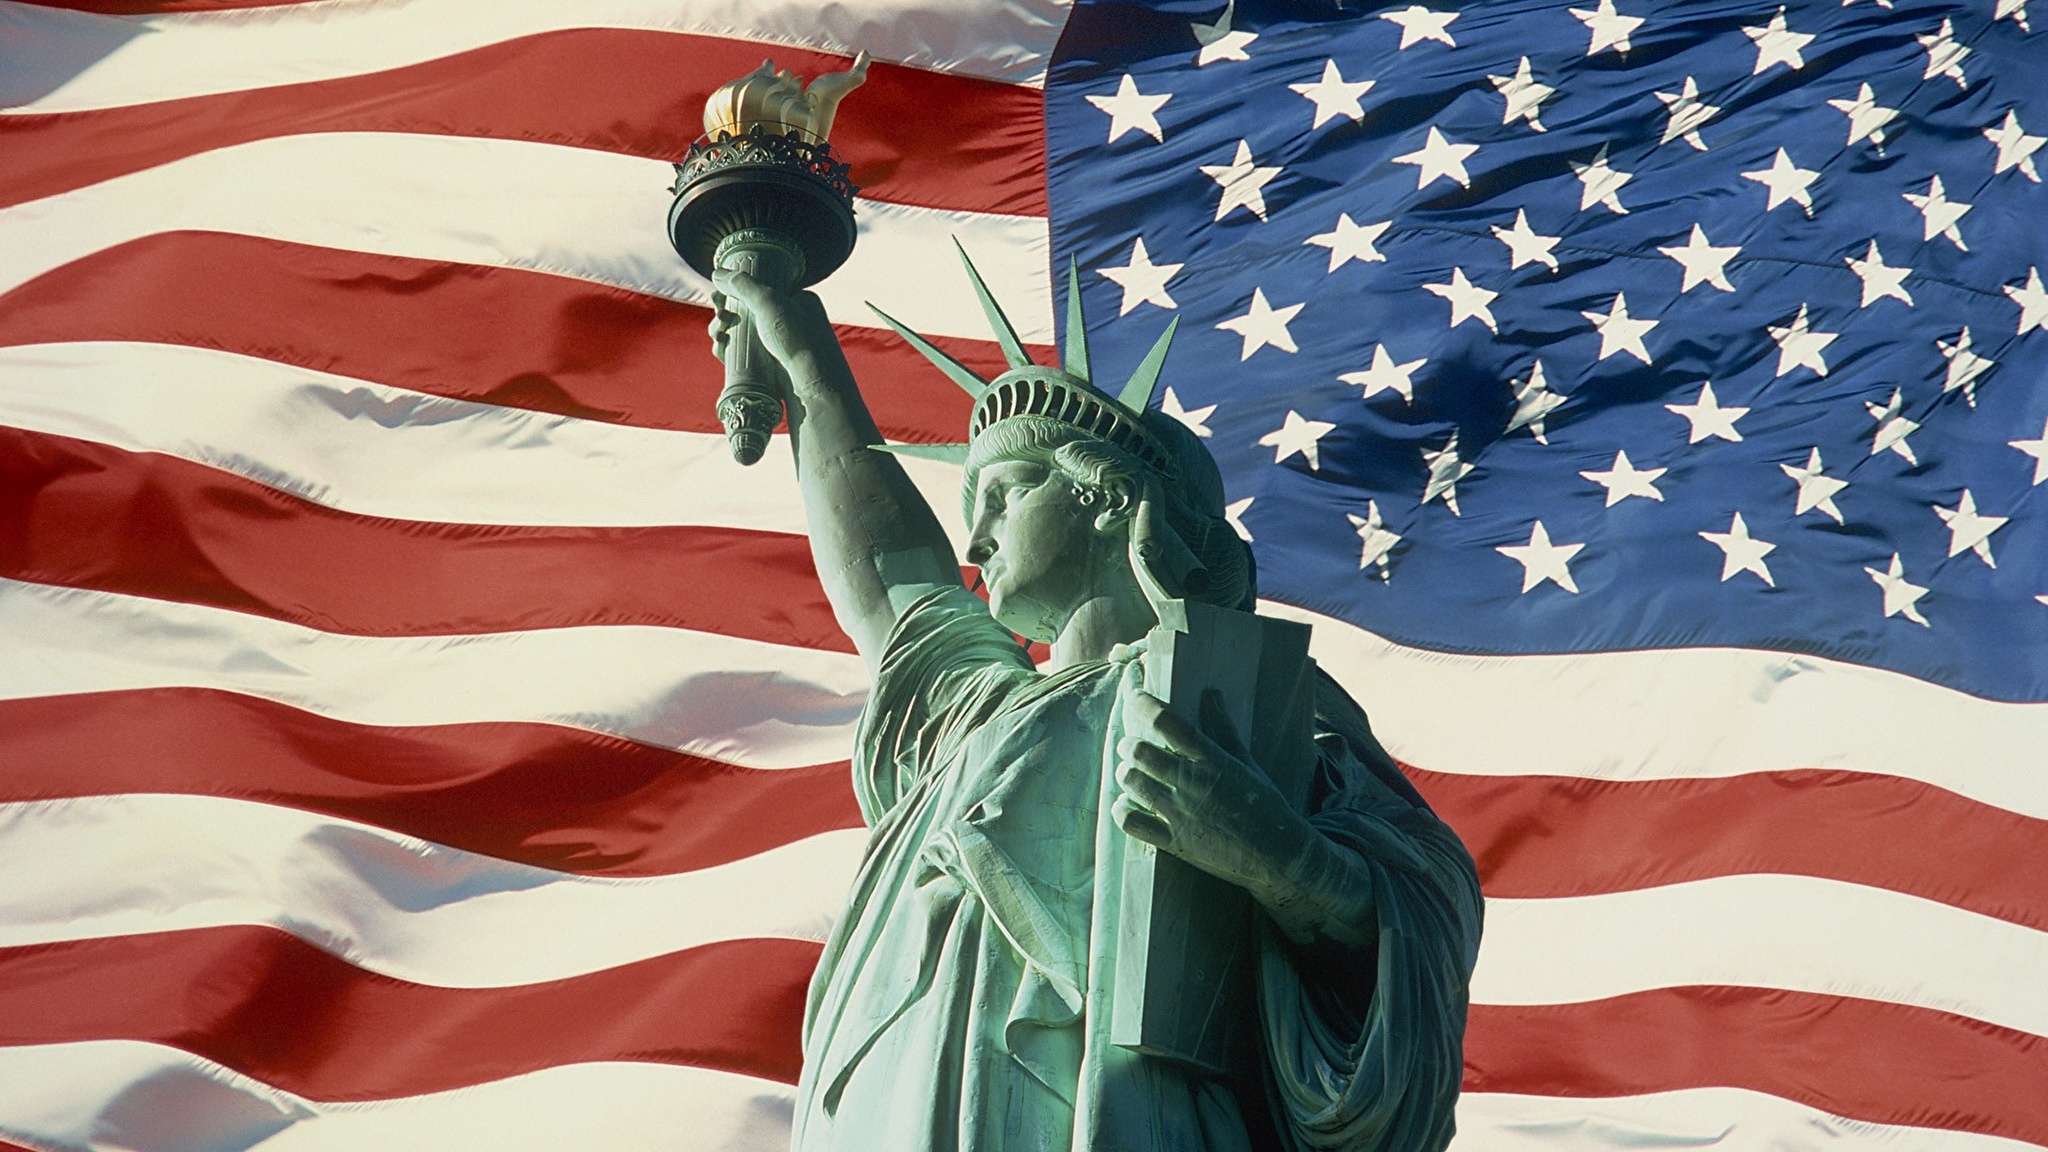 Usa official. Статуя свободы Соединённые штаты Америки. Статуя свободы и флаг США. Соединенные штаты Америки флаг статуя свободы. Коррупция в США.